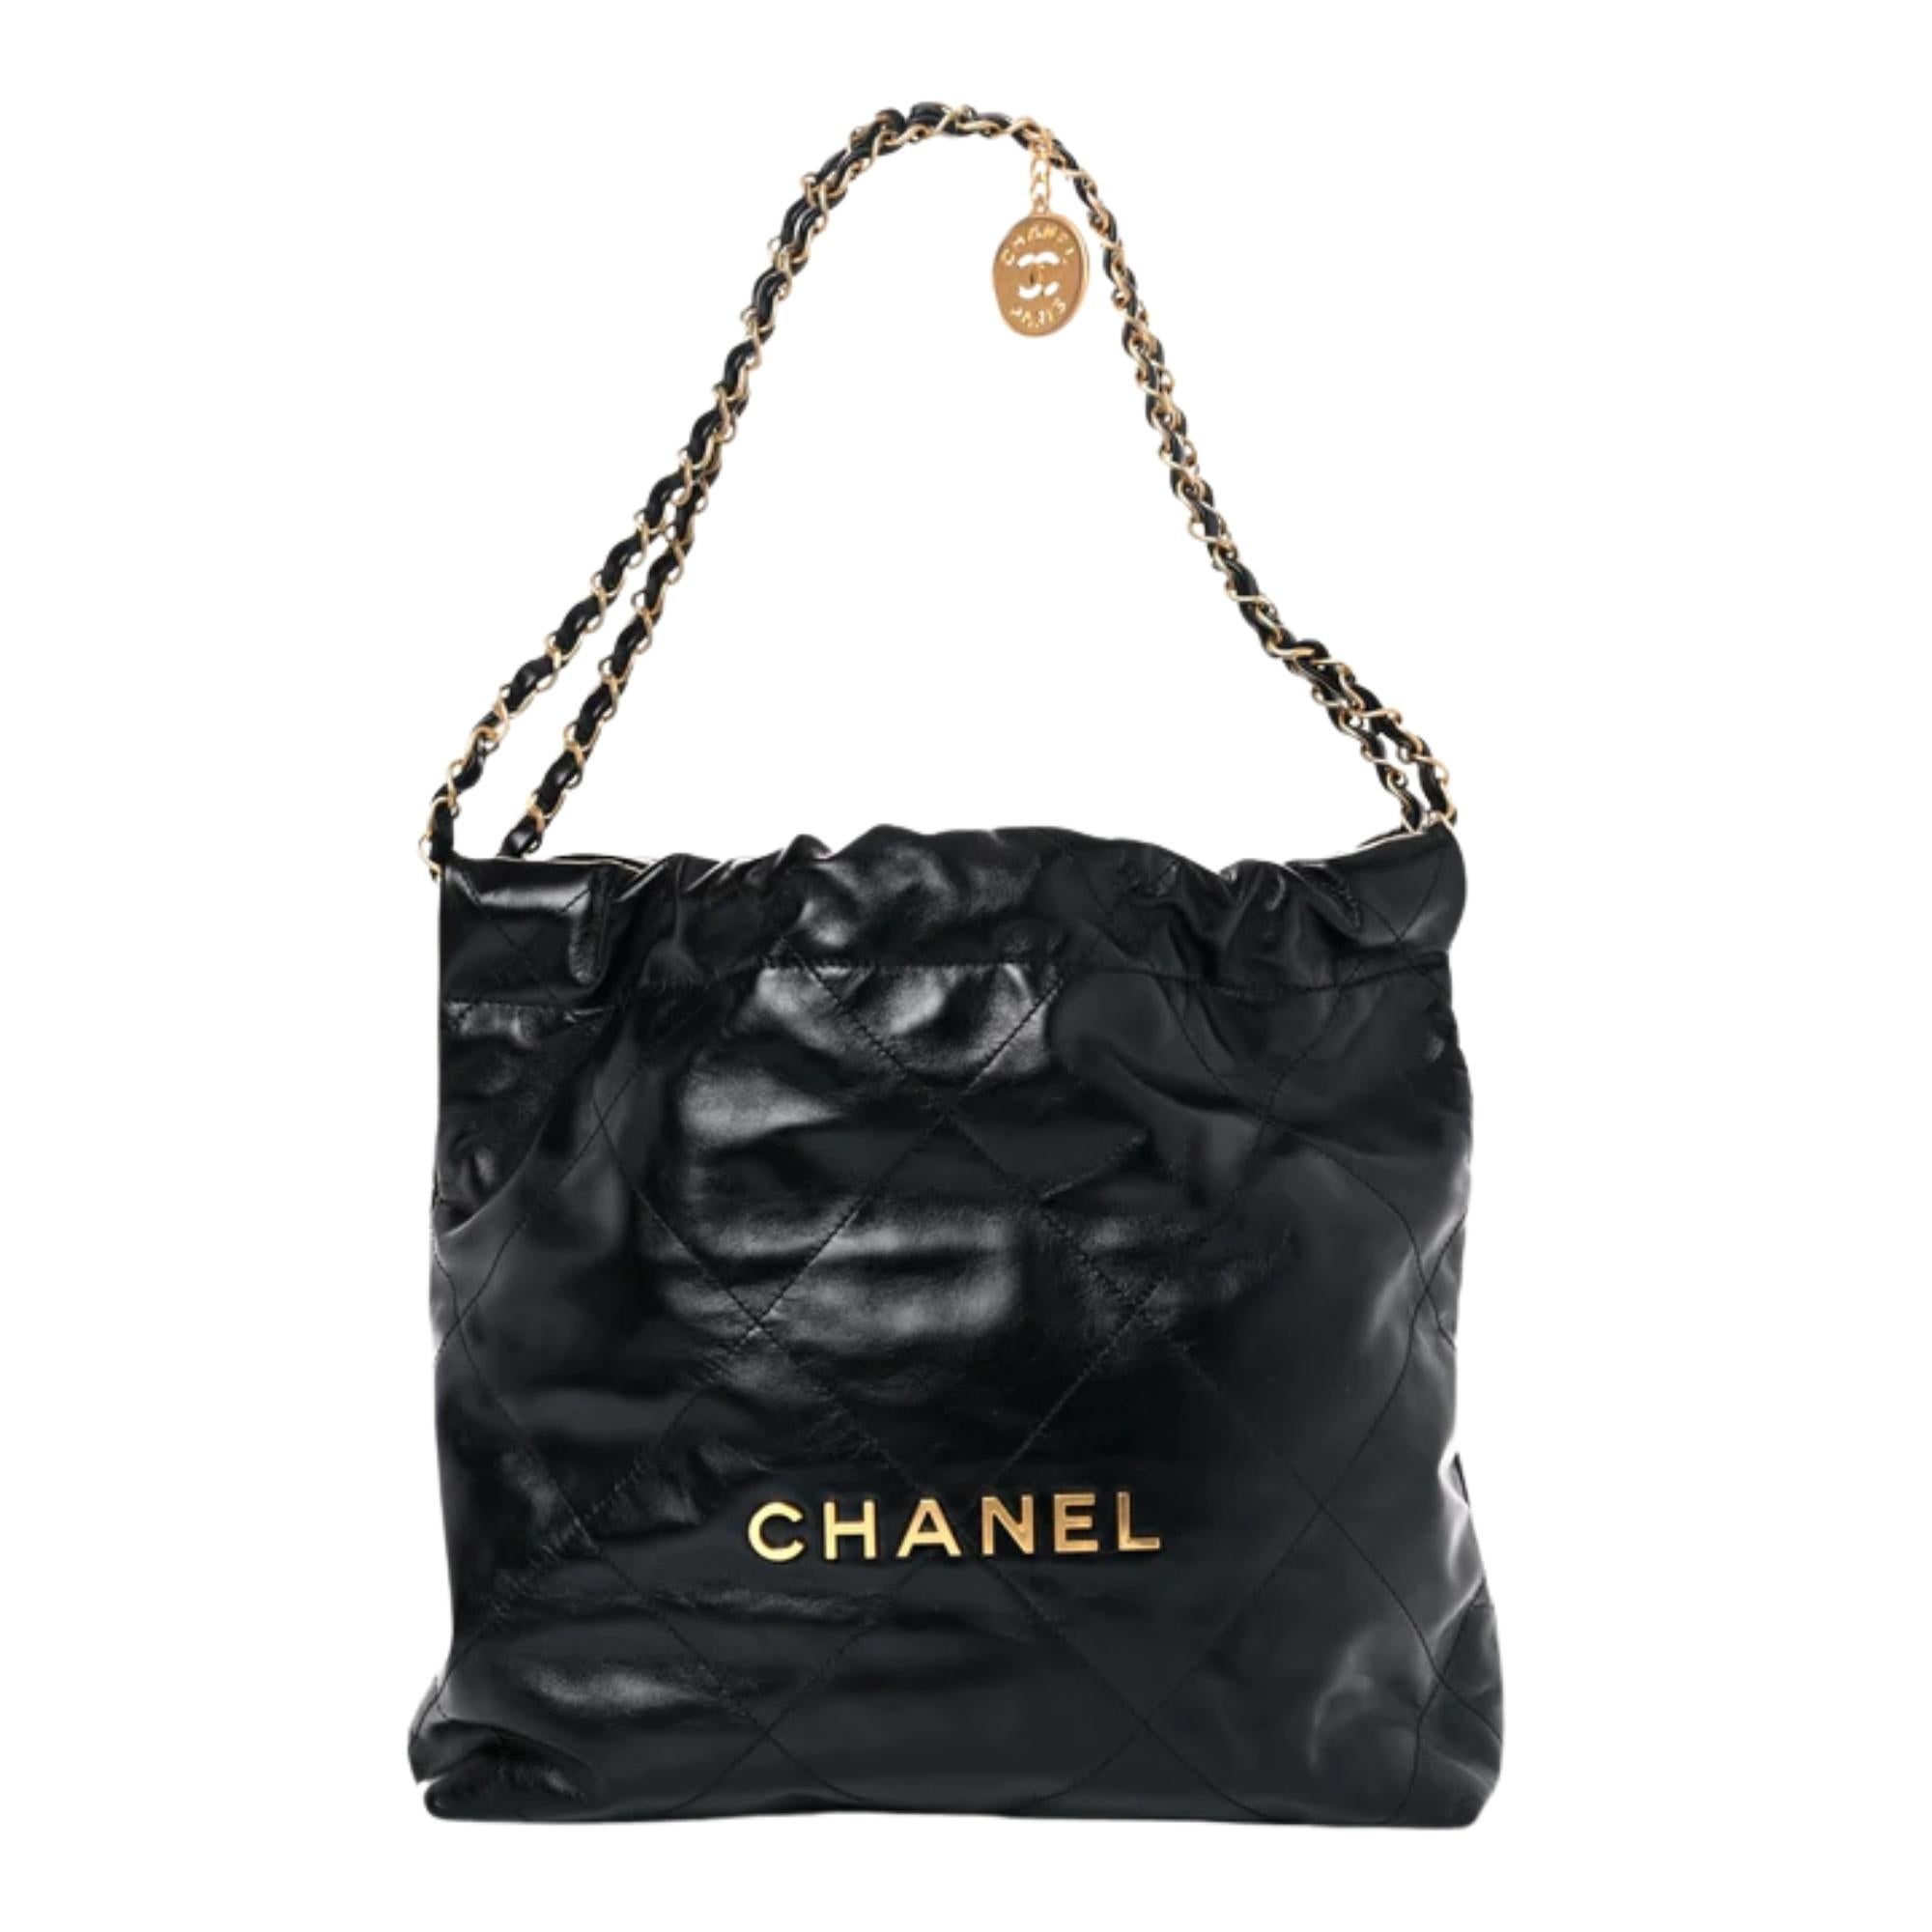 Diese Tasche ist aus schwarzem Kalbsleder mit Diamantnähten und goldfarbenen Beschlägen gefertigt. Die Tasche verfügt über Schulterriemen aus Leder mit Messingkette, ein passendes Chanel-Logo auf der Vorderseite und einen hängenden Logo-Charme. Die